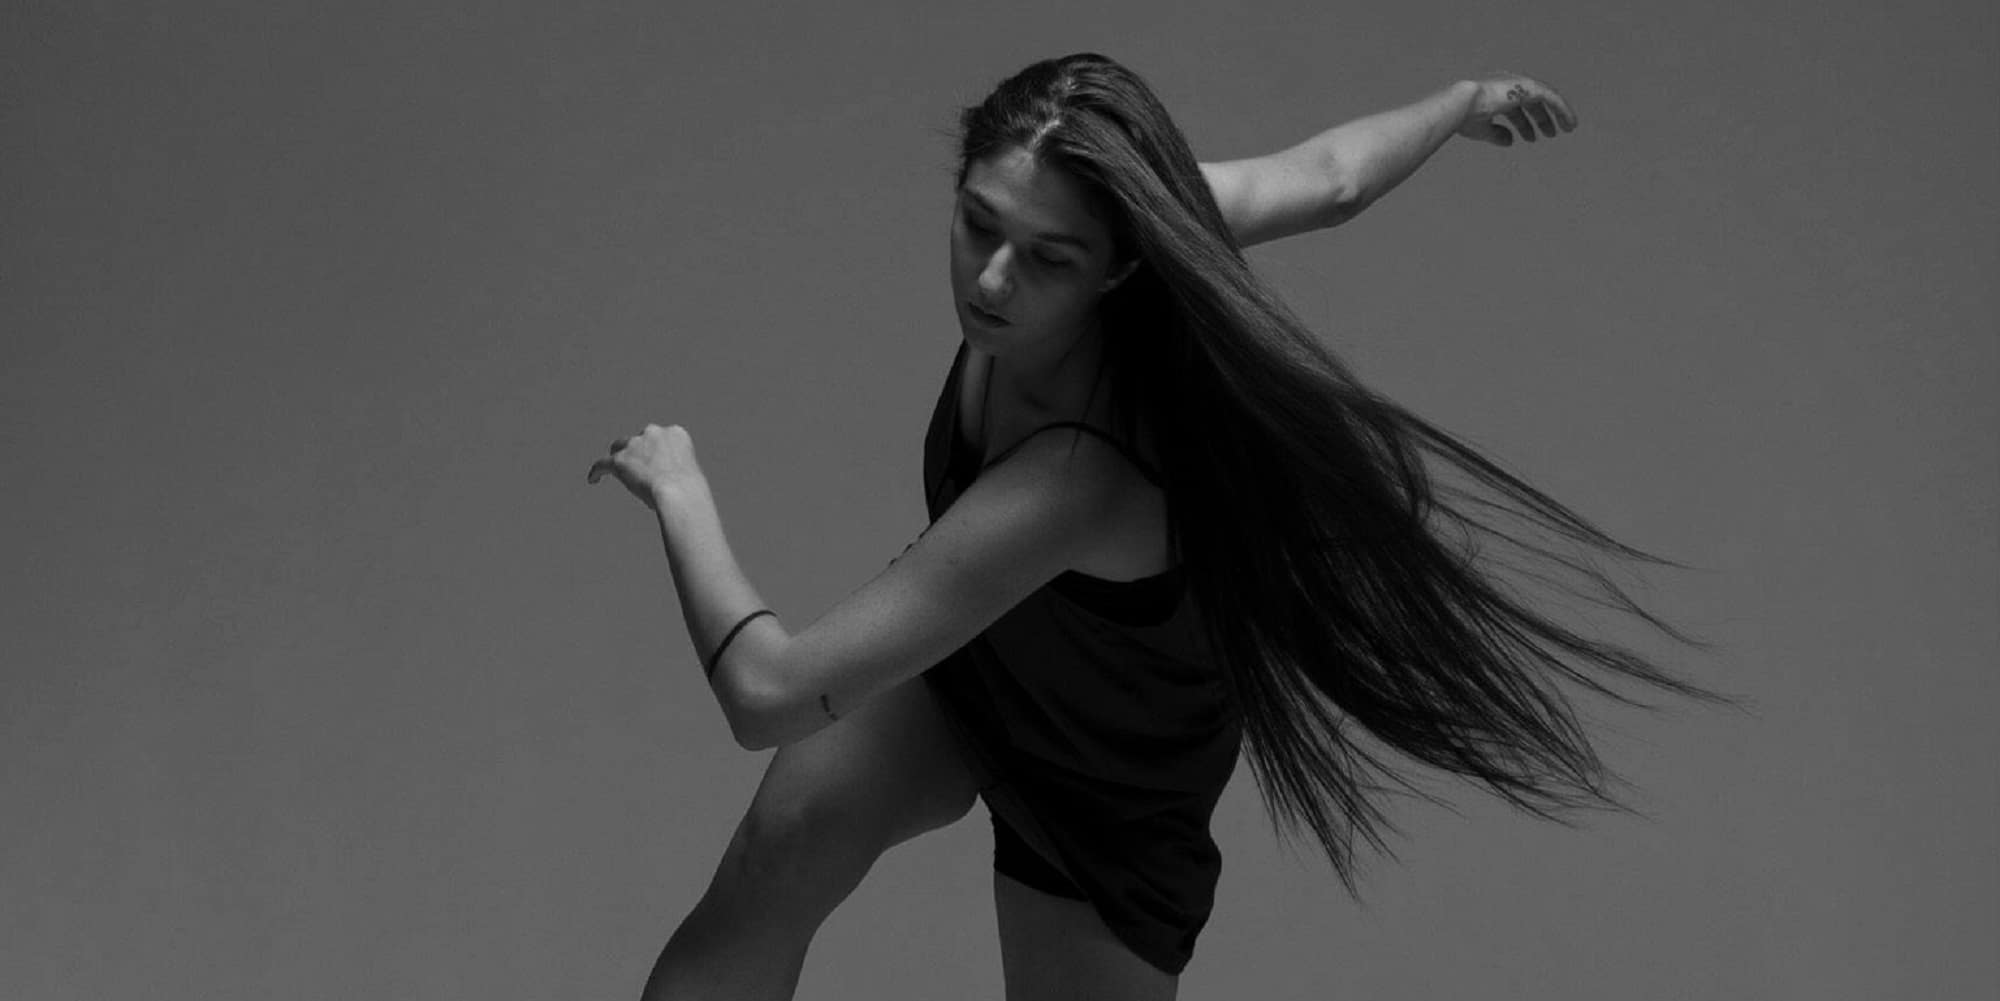 Από την Κρατική Ακαδημία Χορού της Μόσχας και τα Μπολσόι στην Αθήνα με μια παράσταση χορού ενάντια στη βία